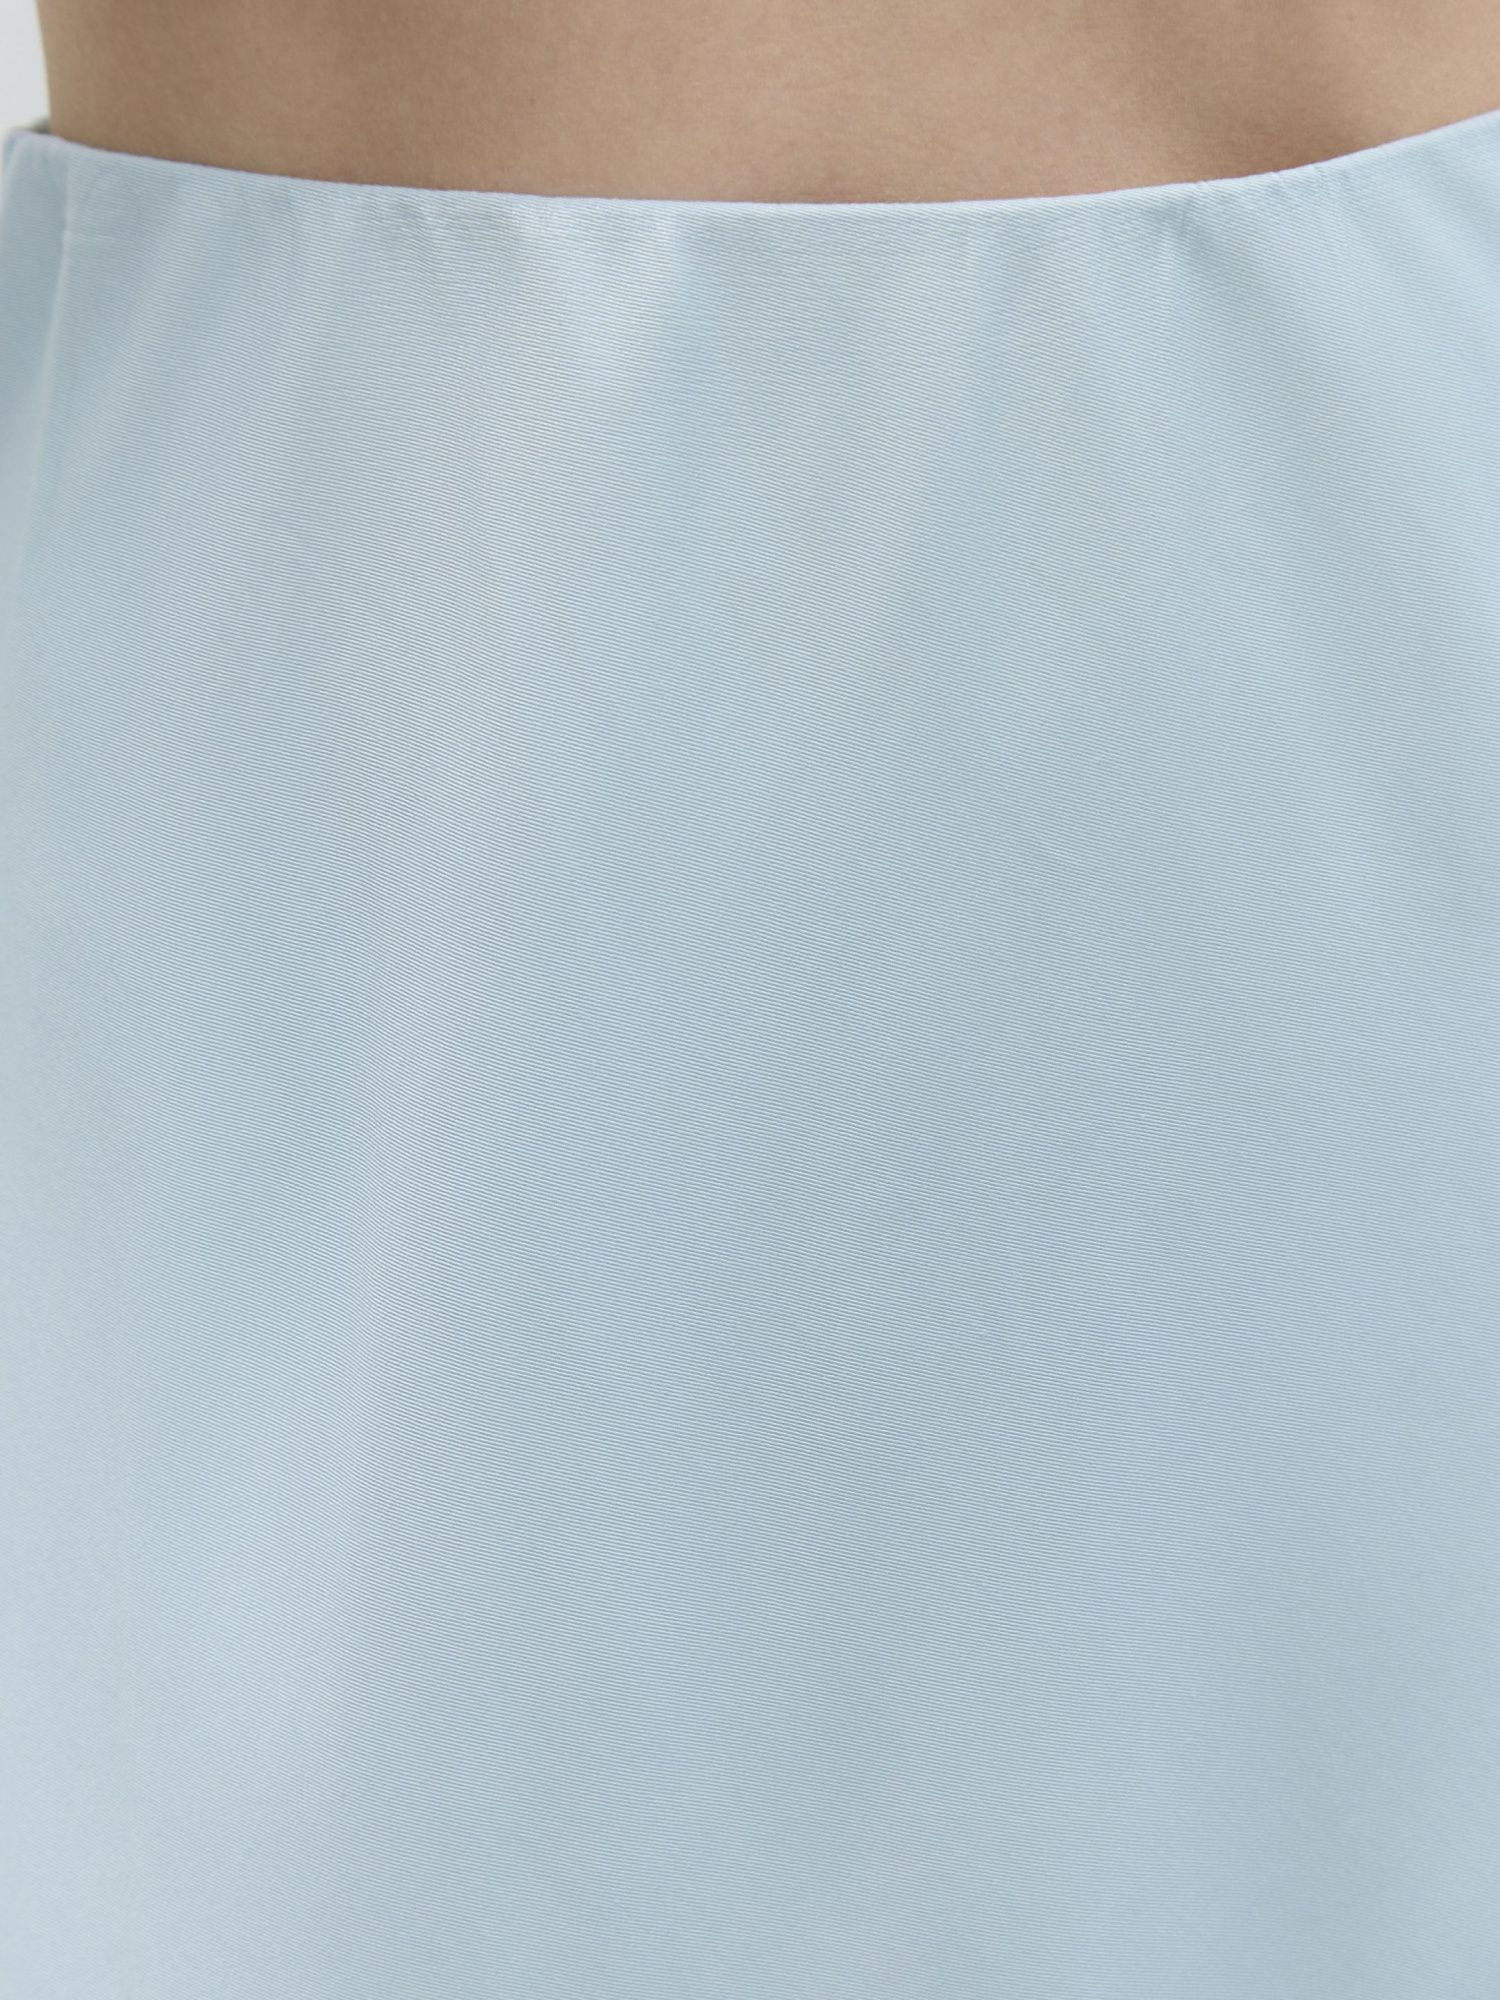 Юбка миди с эффектом TIE DYE светло-голубой - фото 3. Around